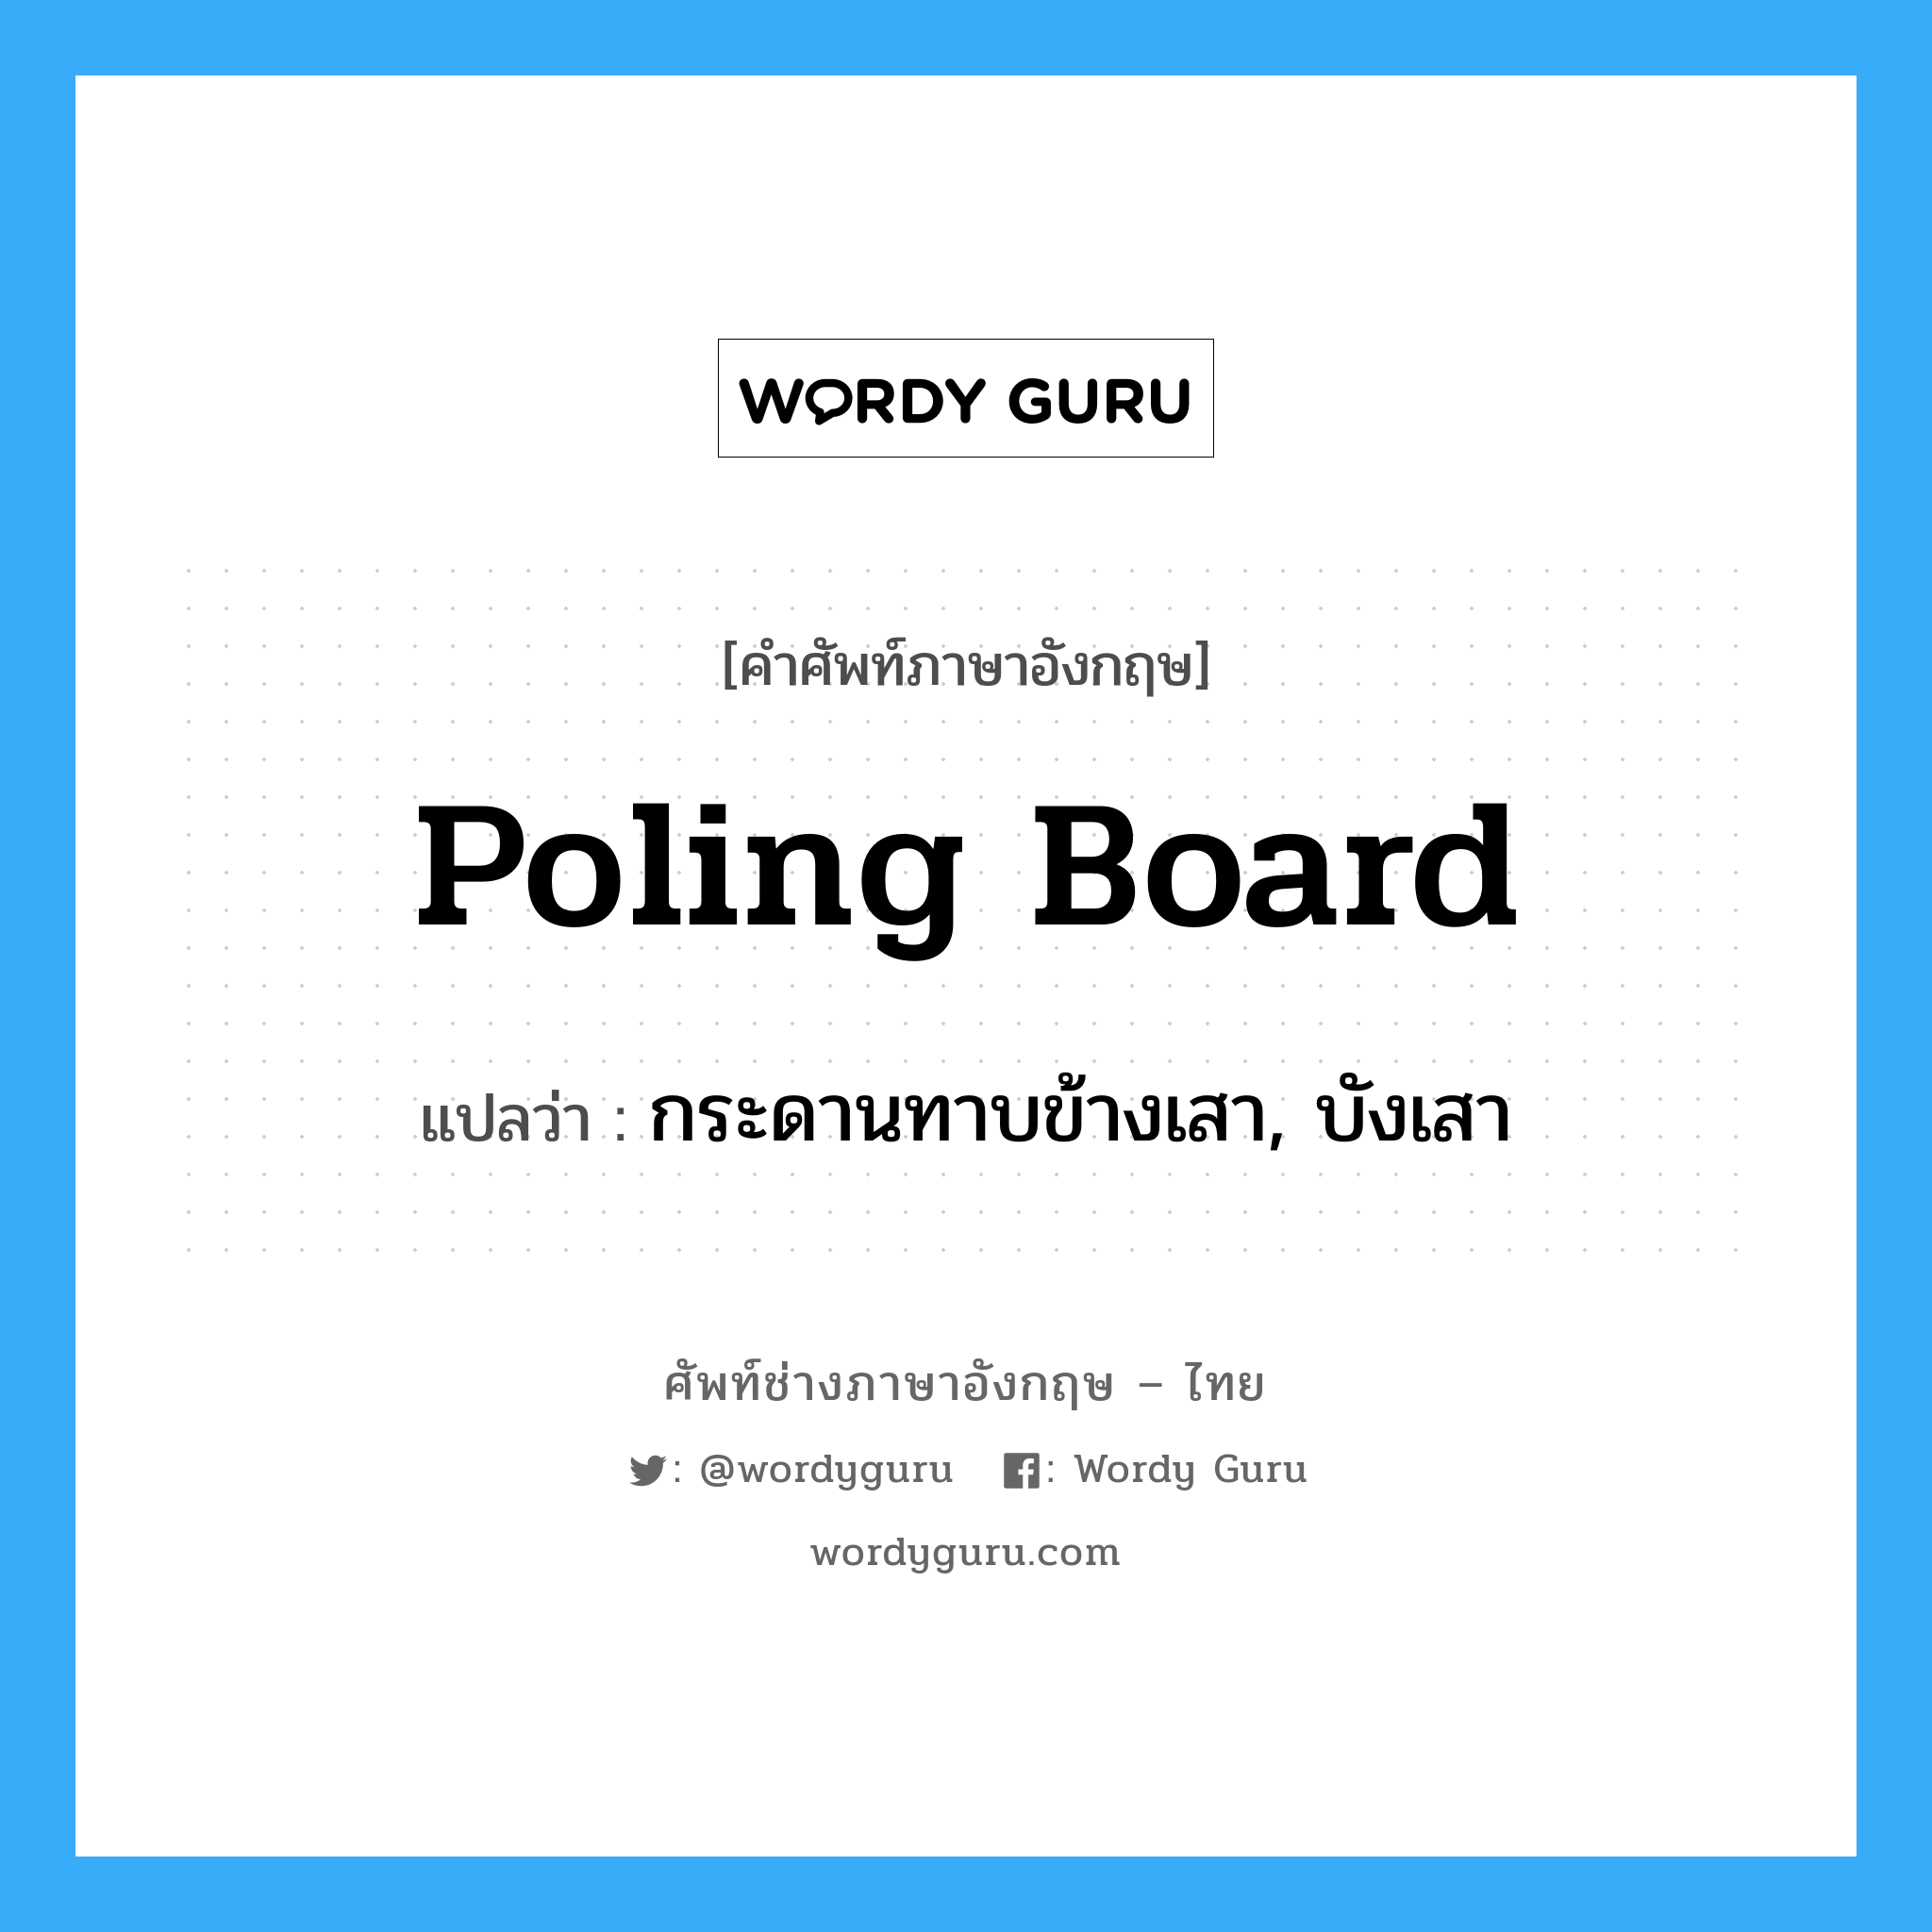 poling board แปลว่า?, คำศัพท์ช่างภาษาอังกฤษ - ไทย poling board คำศัพท์ภาษาอังกฤษ poling board แปลว่า กระดานทาบข้างเสา, บังเสา